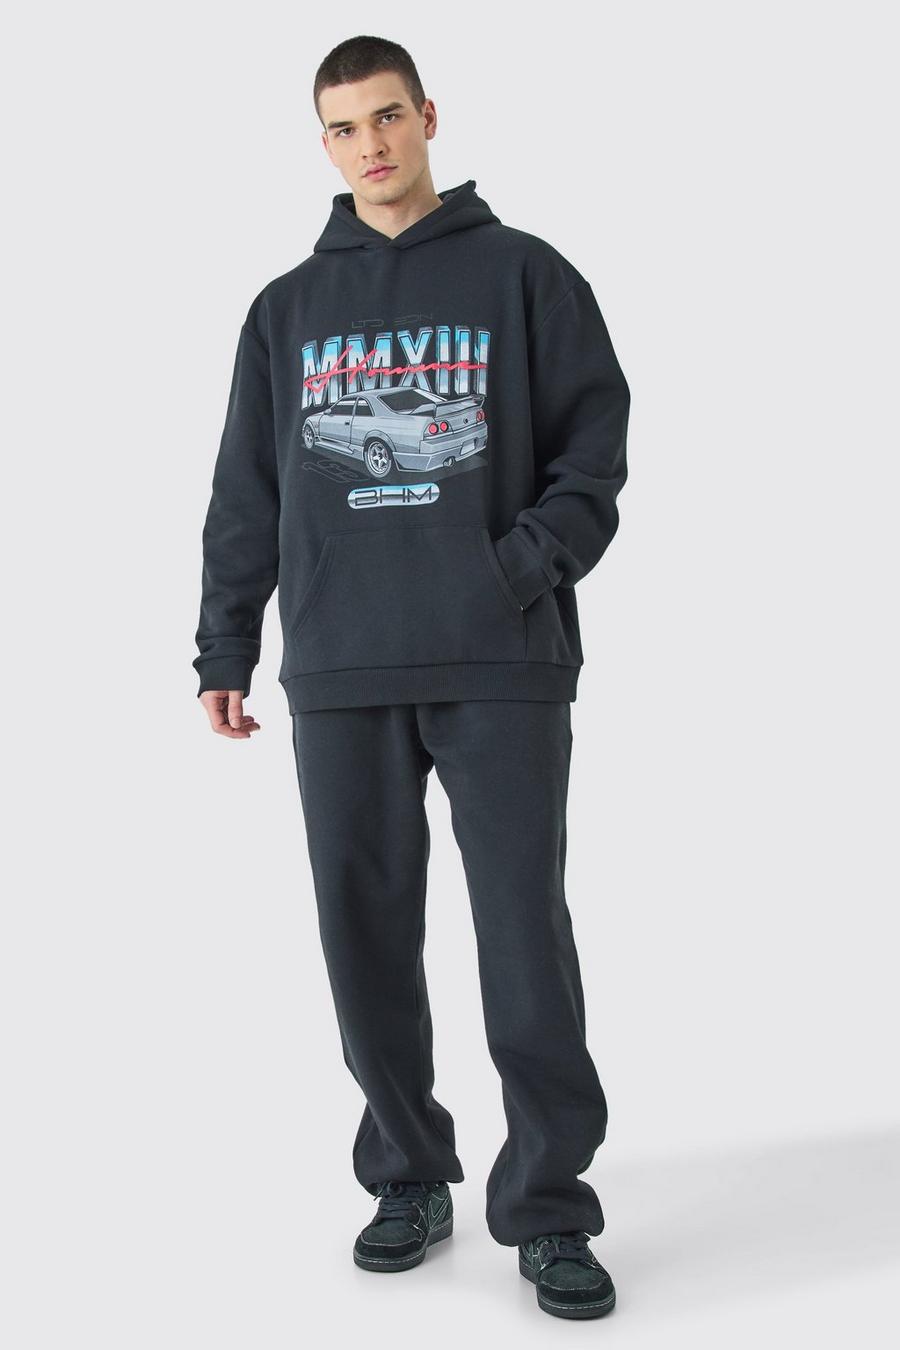 Chándal Tall oversize con capucha y estampado de coche MMXIII, Black image number 1